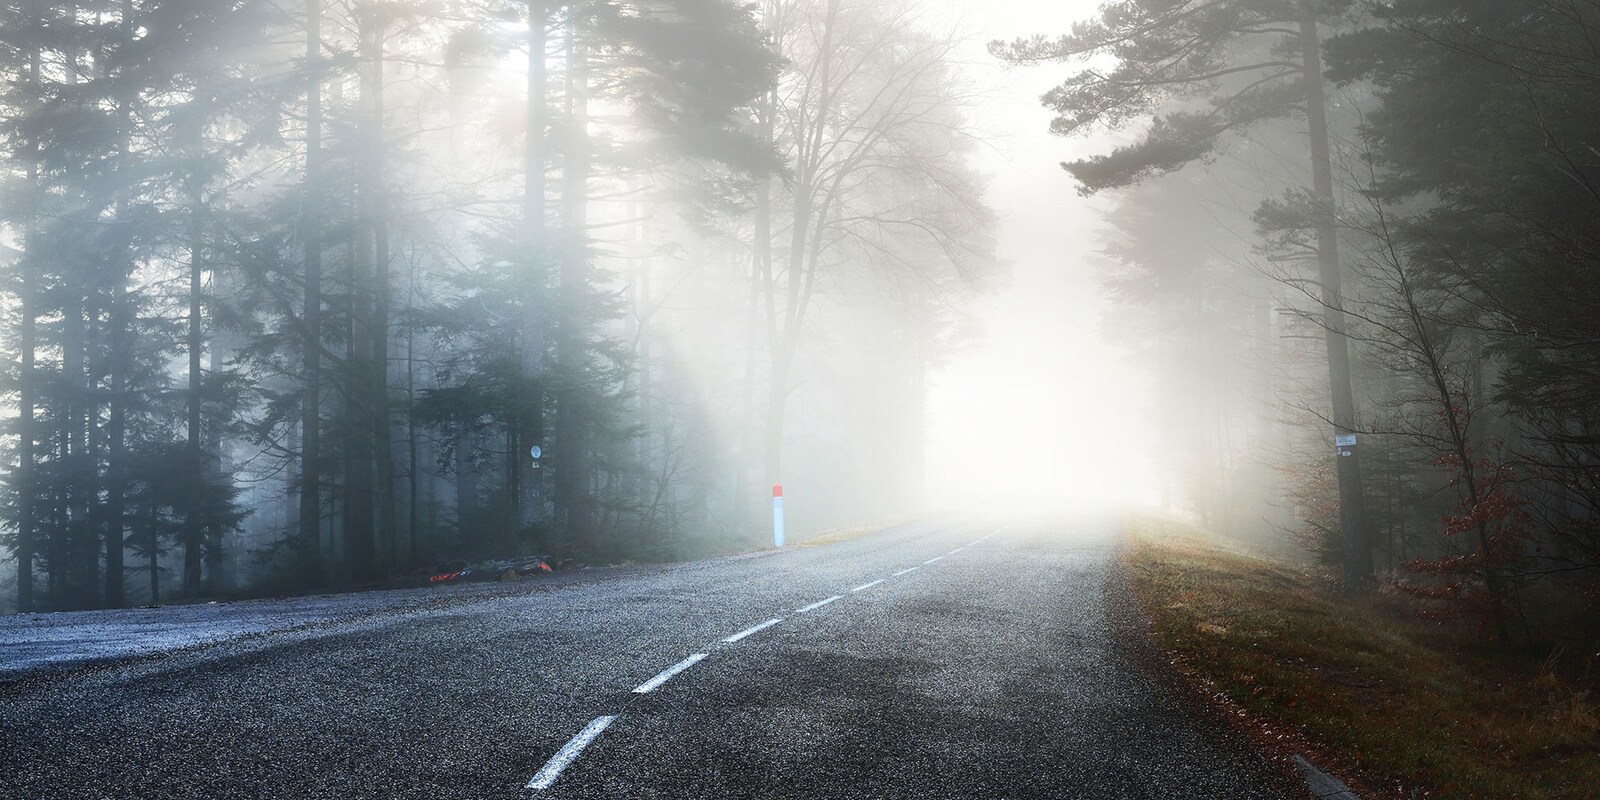 Phong cảnh con đường dẫn vào thung lũng sương mù 29